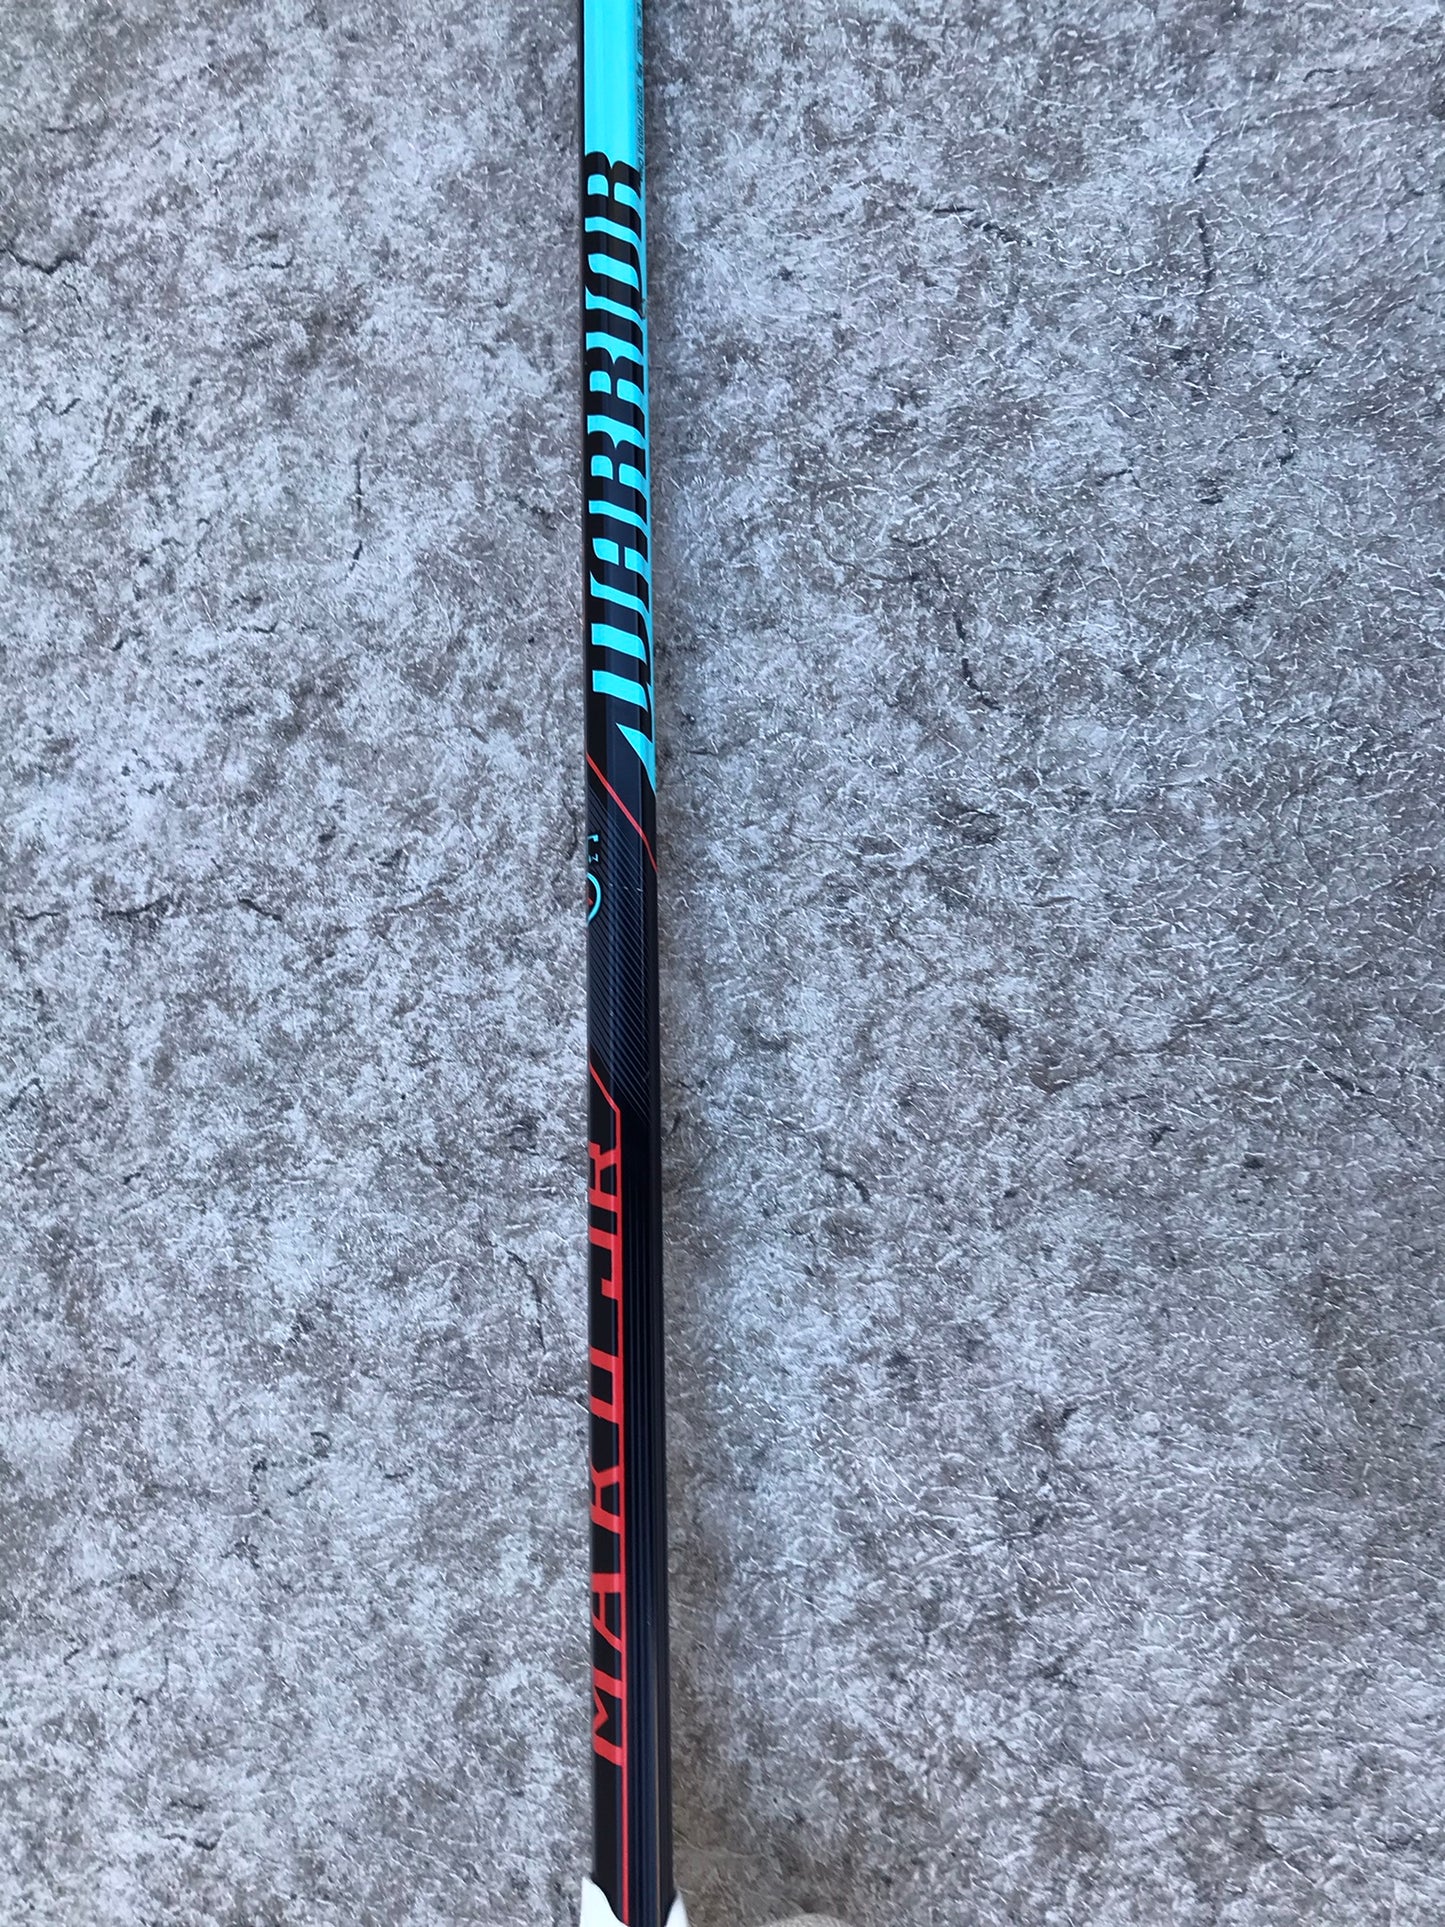 Lacrosse Stick 37 inch Warrior Mako JR Black Blue Grey Excellent